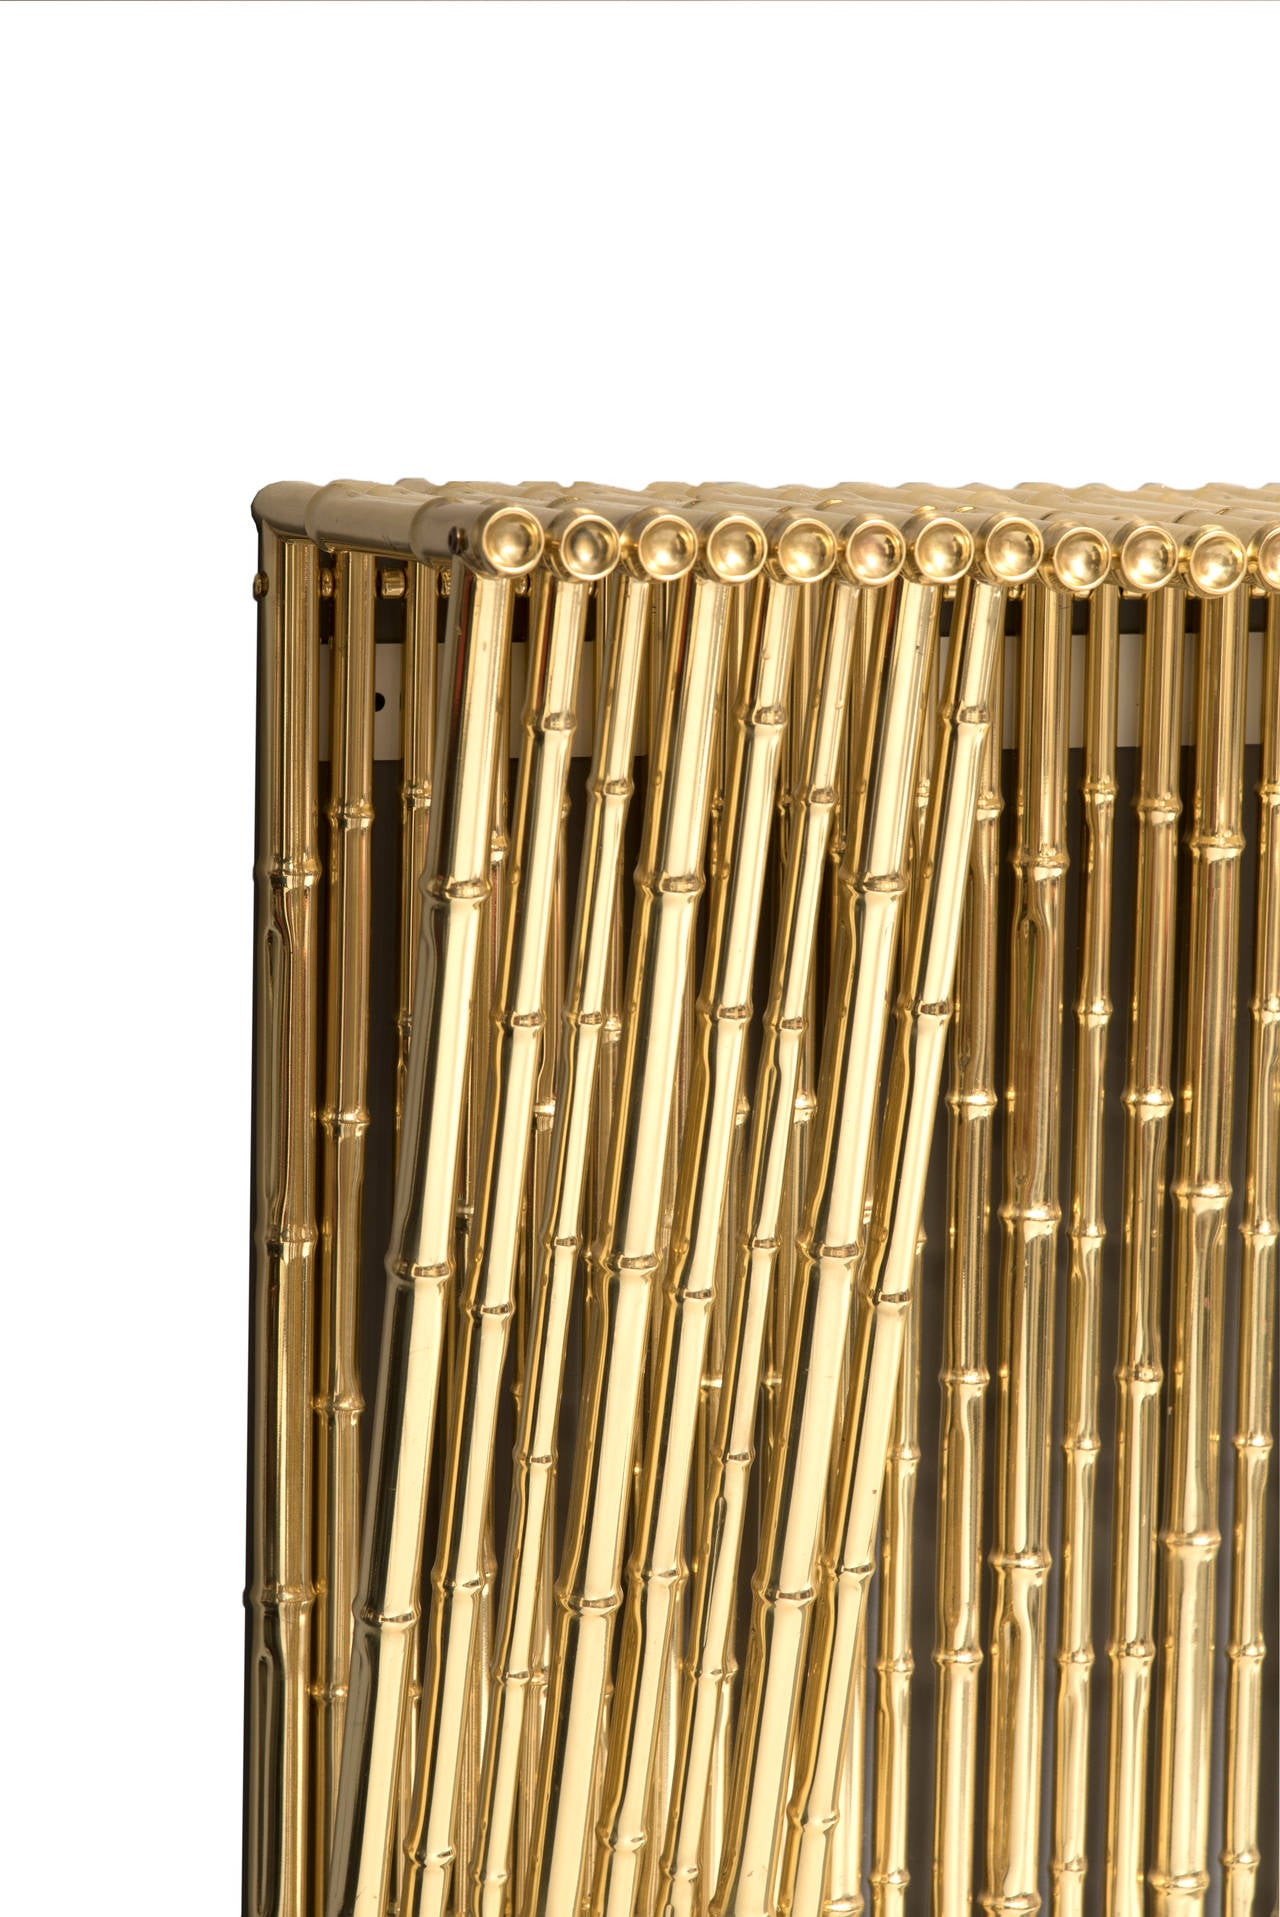 Italian Ferruccio Laviani Console Table in Gold-Plated Brass, circa 2010 Italy